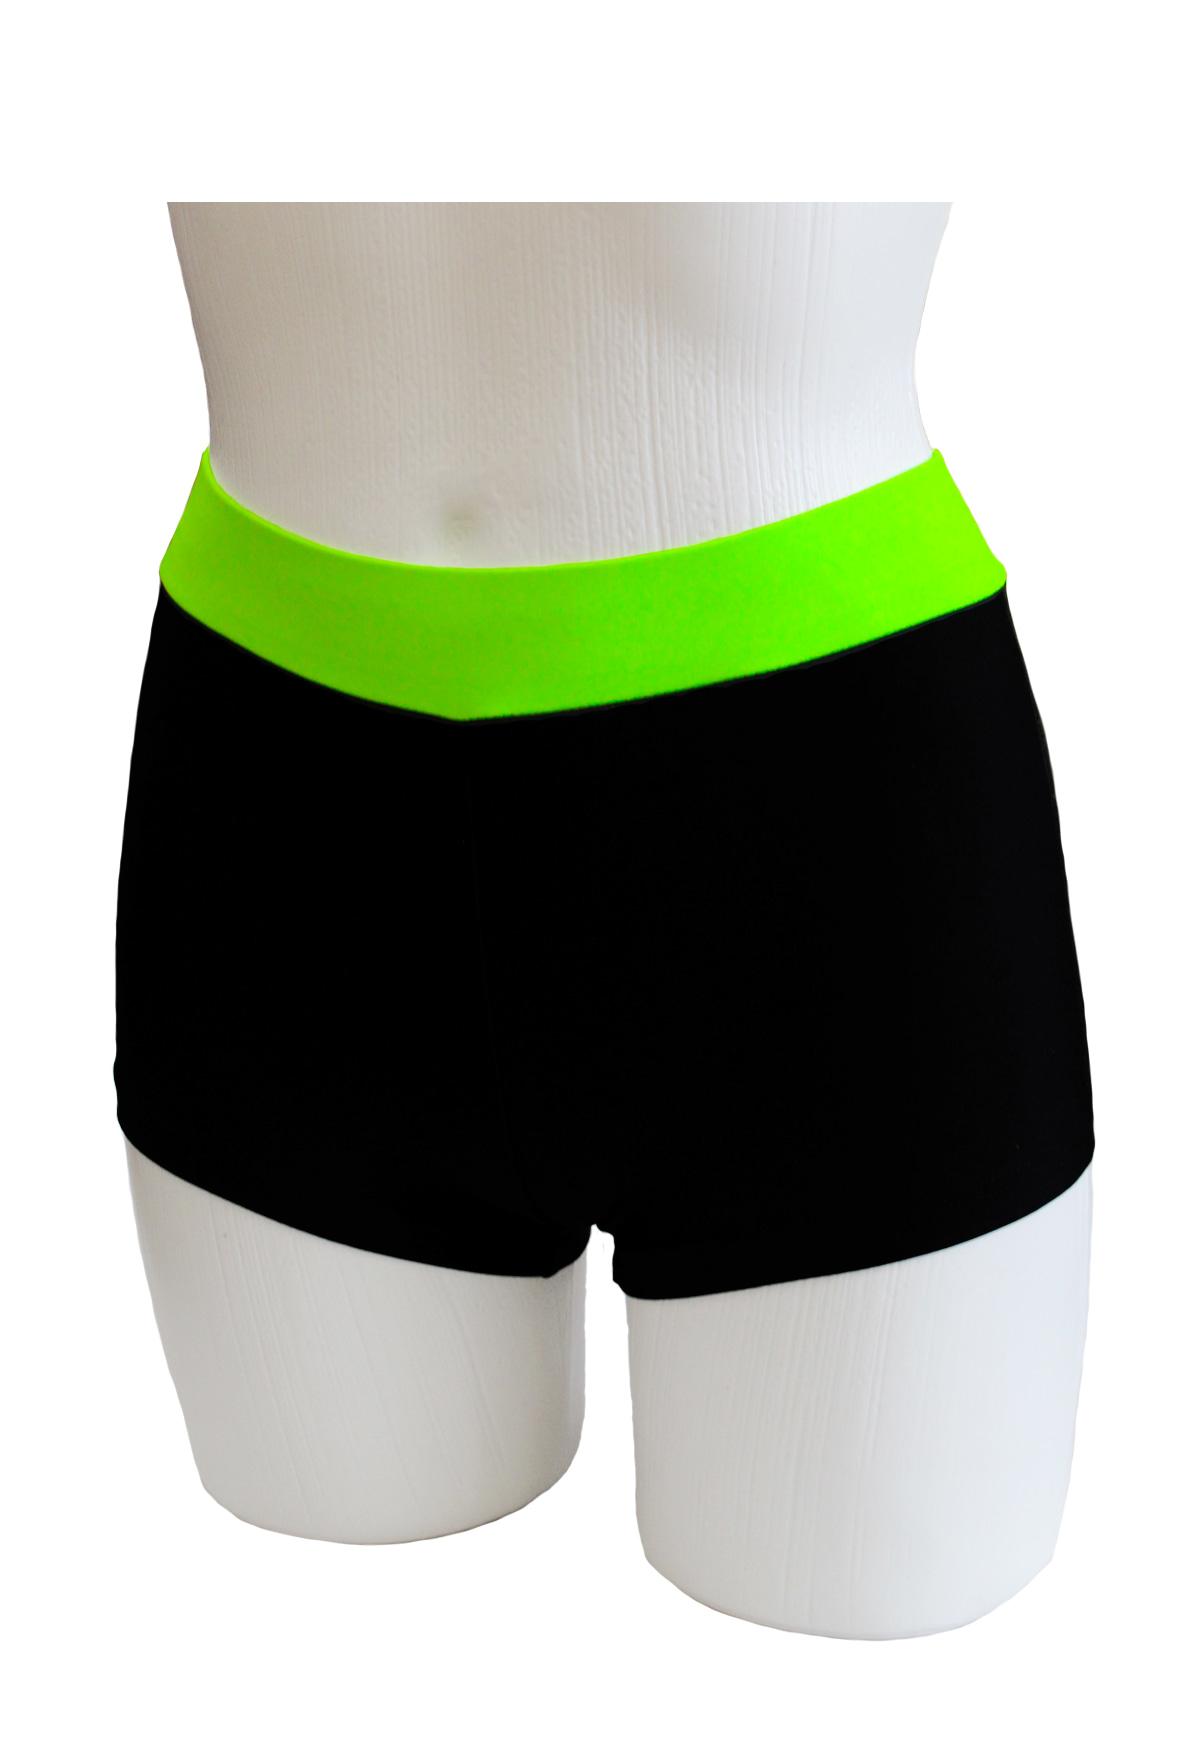 Шорты женские для спортивной гимнастики GK Sport ШКМ3.1С черные с салатовым поясом